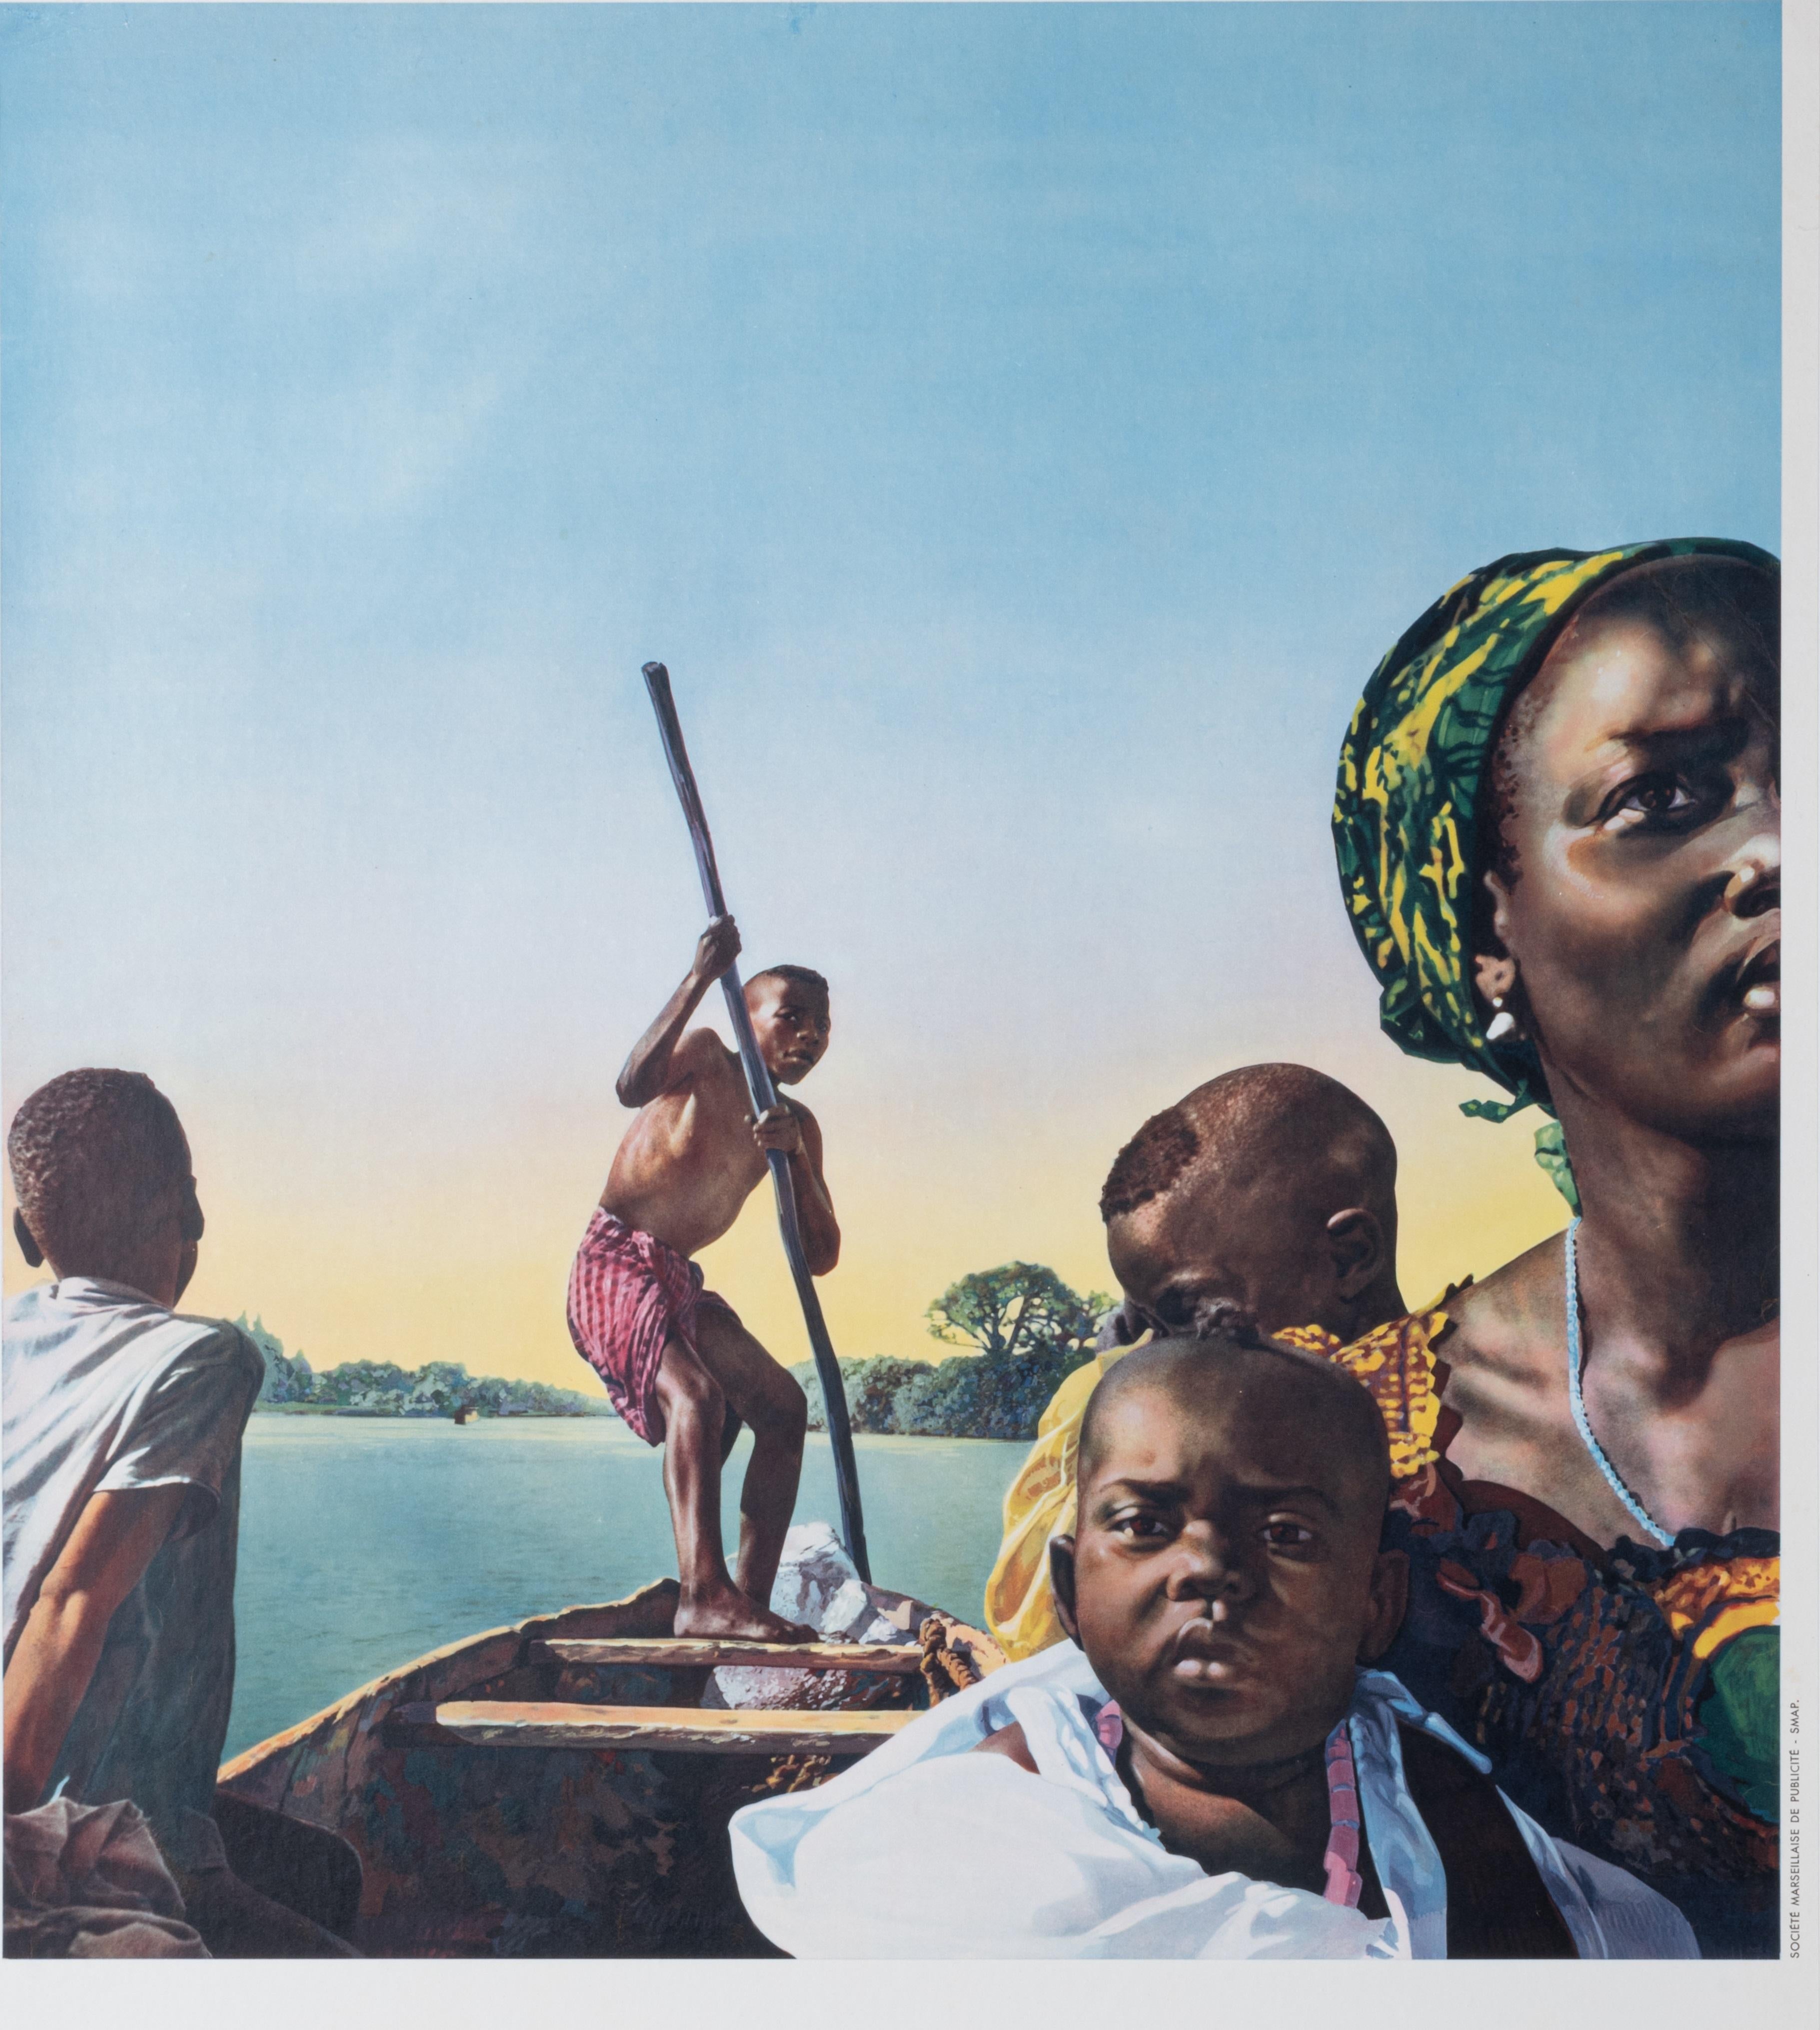 Poster of the Compagnie de Navigation Paquet created around 1955 to promote maritime tourism to Senegal.

Artist:  Anonymous  
Title: Allez au Sénégal par les paquebots rapides de la compagnie de navigation Paquet
Date: circa 1955
Size (w x h): 24.4